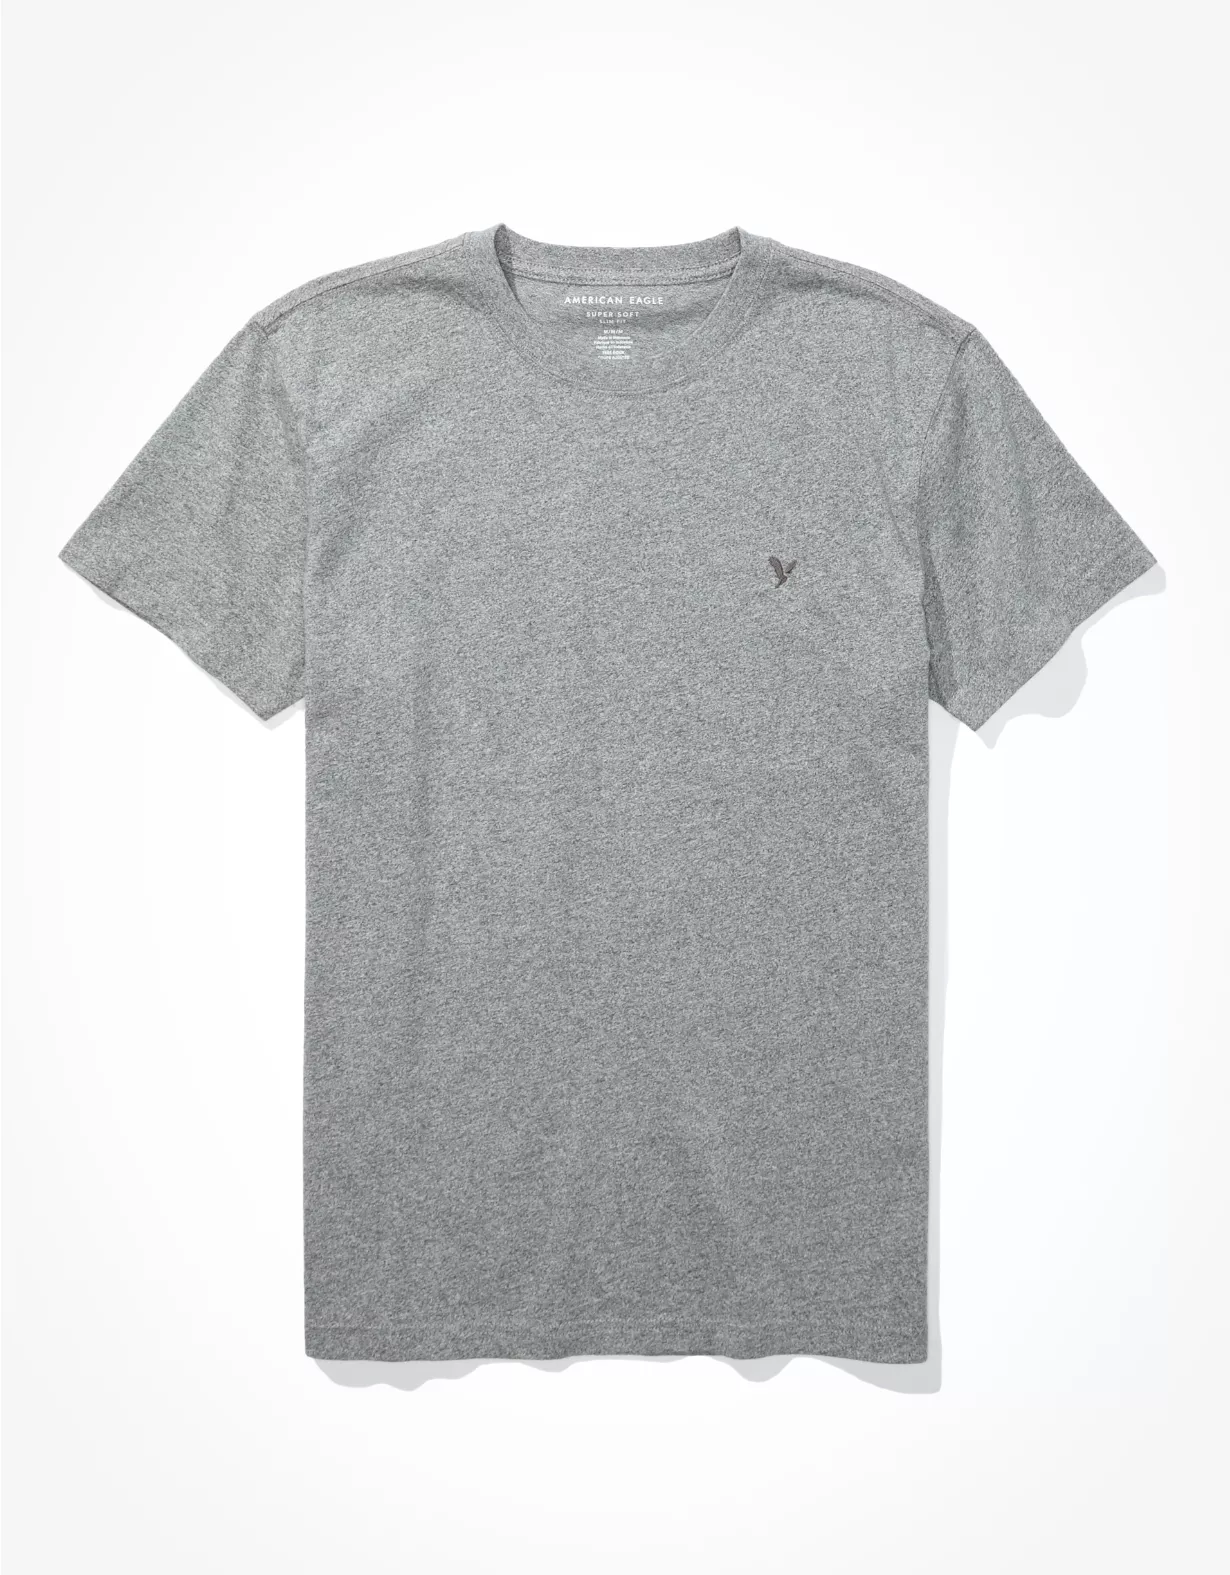 AE Super Soft Icon Slim Fit T-Shirt